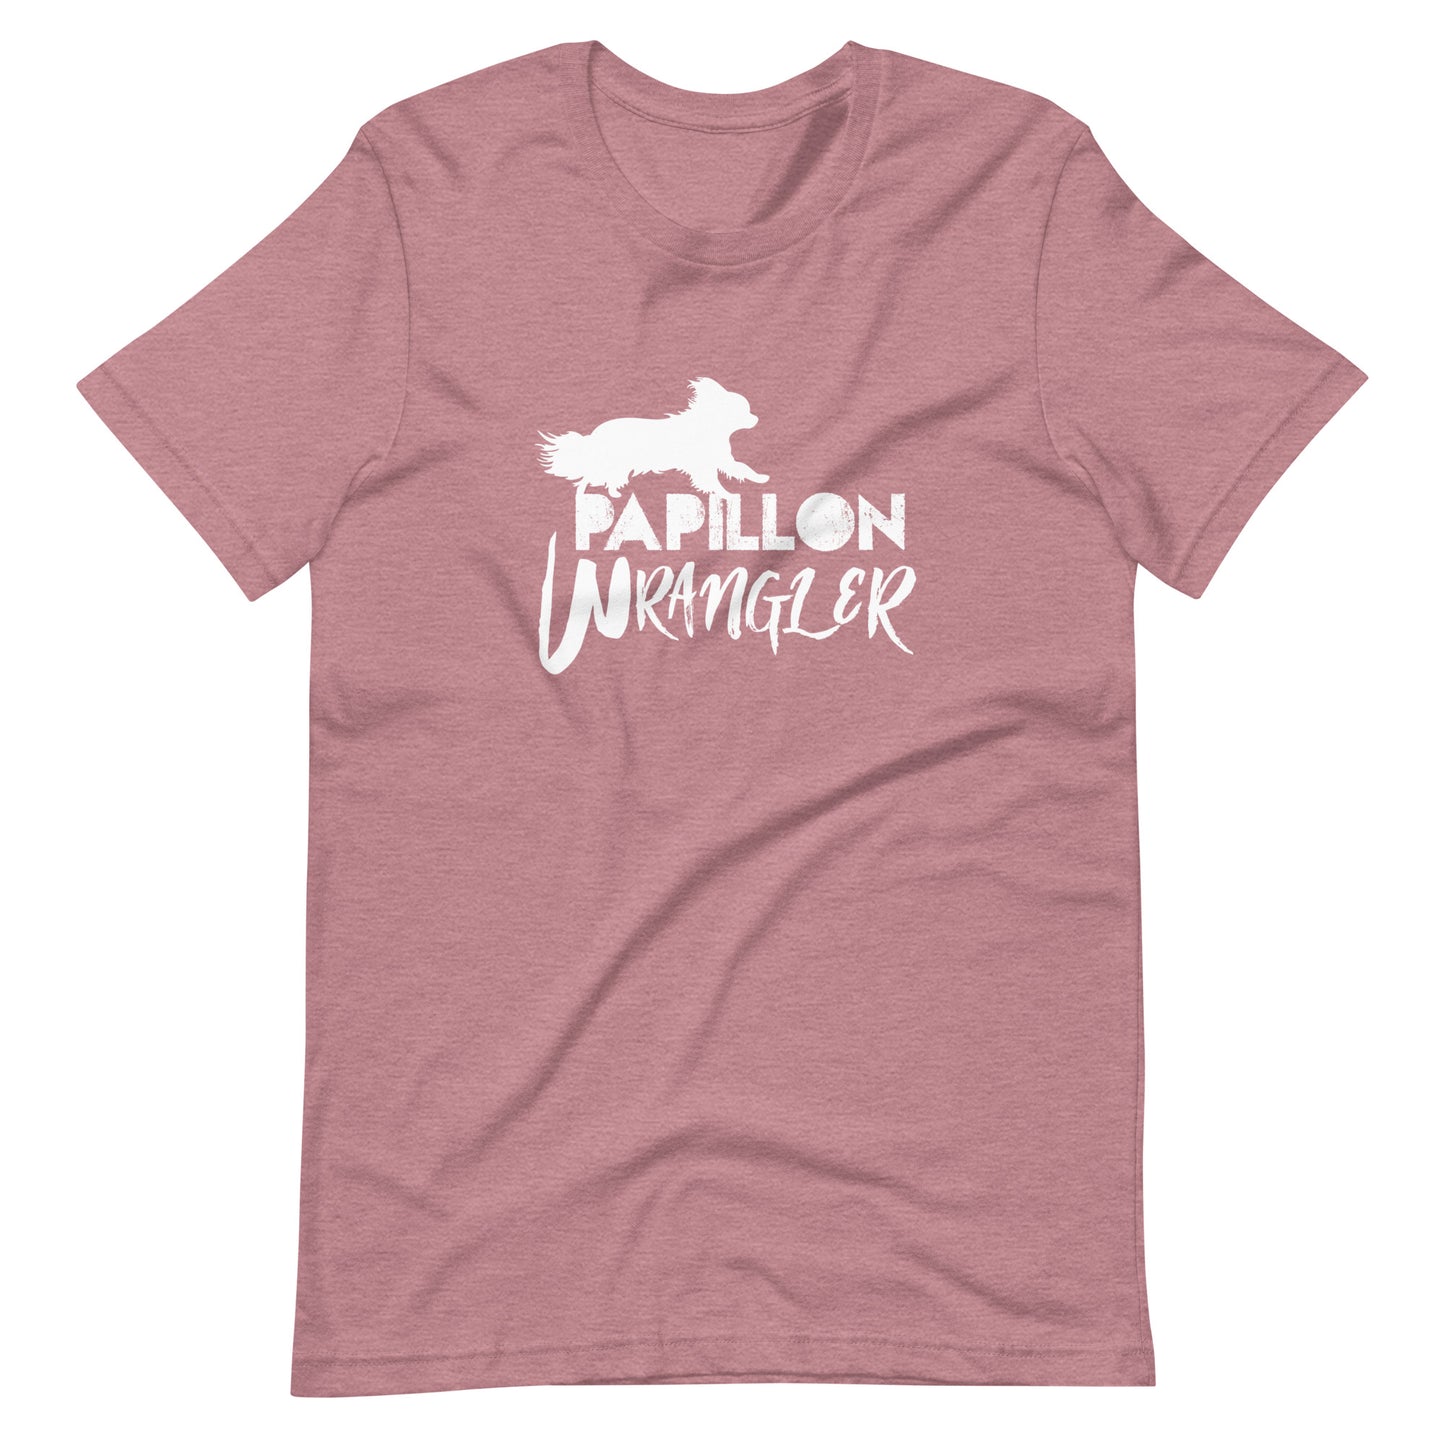 PAPILLON WRANGLER 3 Unisex t-shirt